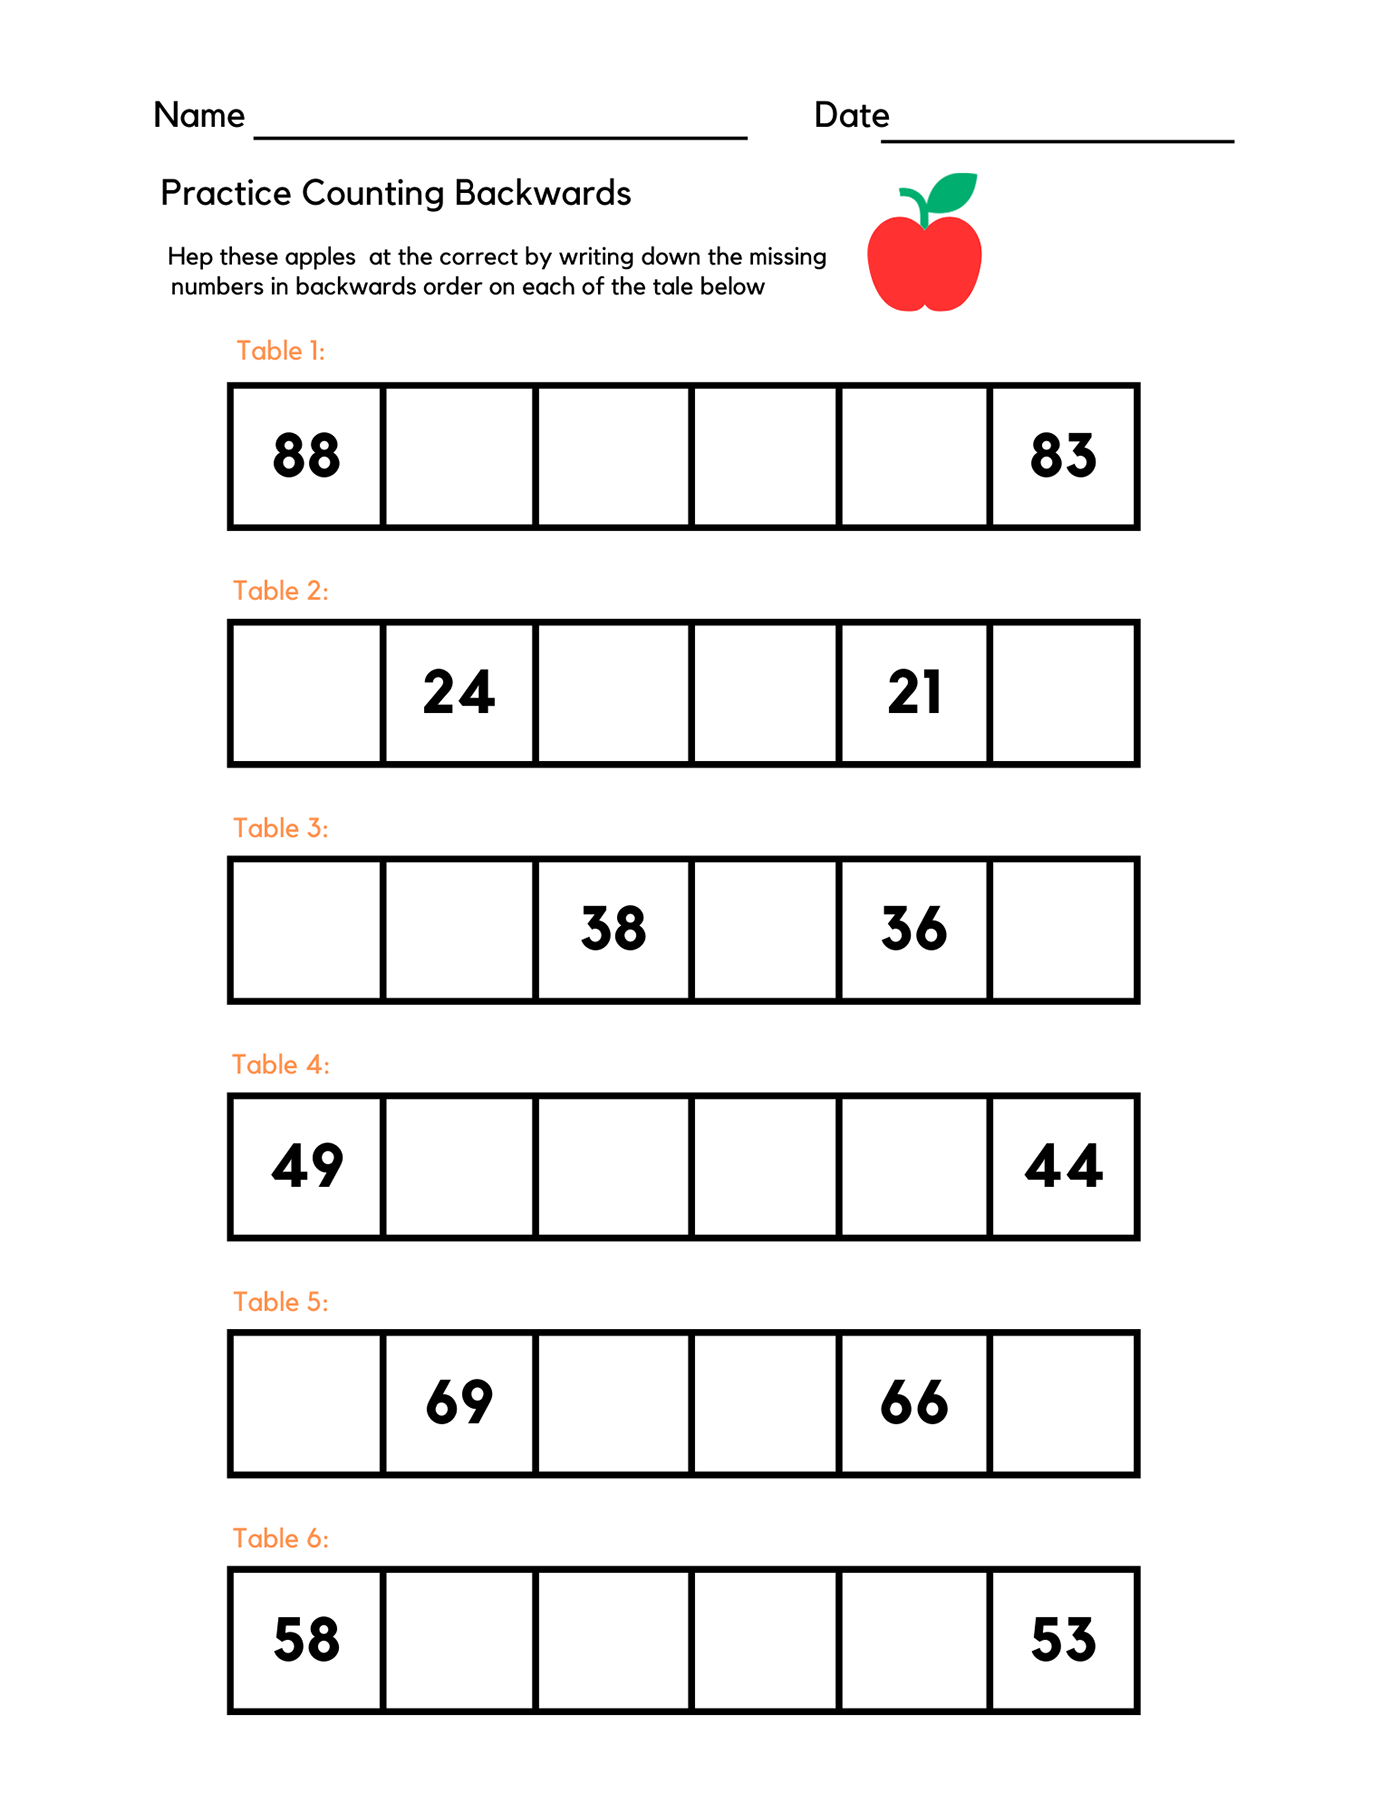 numbers Practice backwards worksheet Education kindergarten Preschool learning kids counting